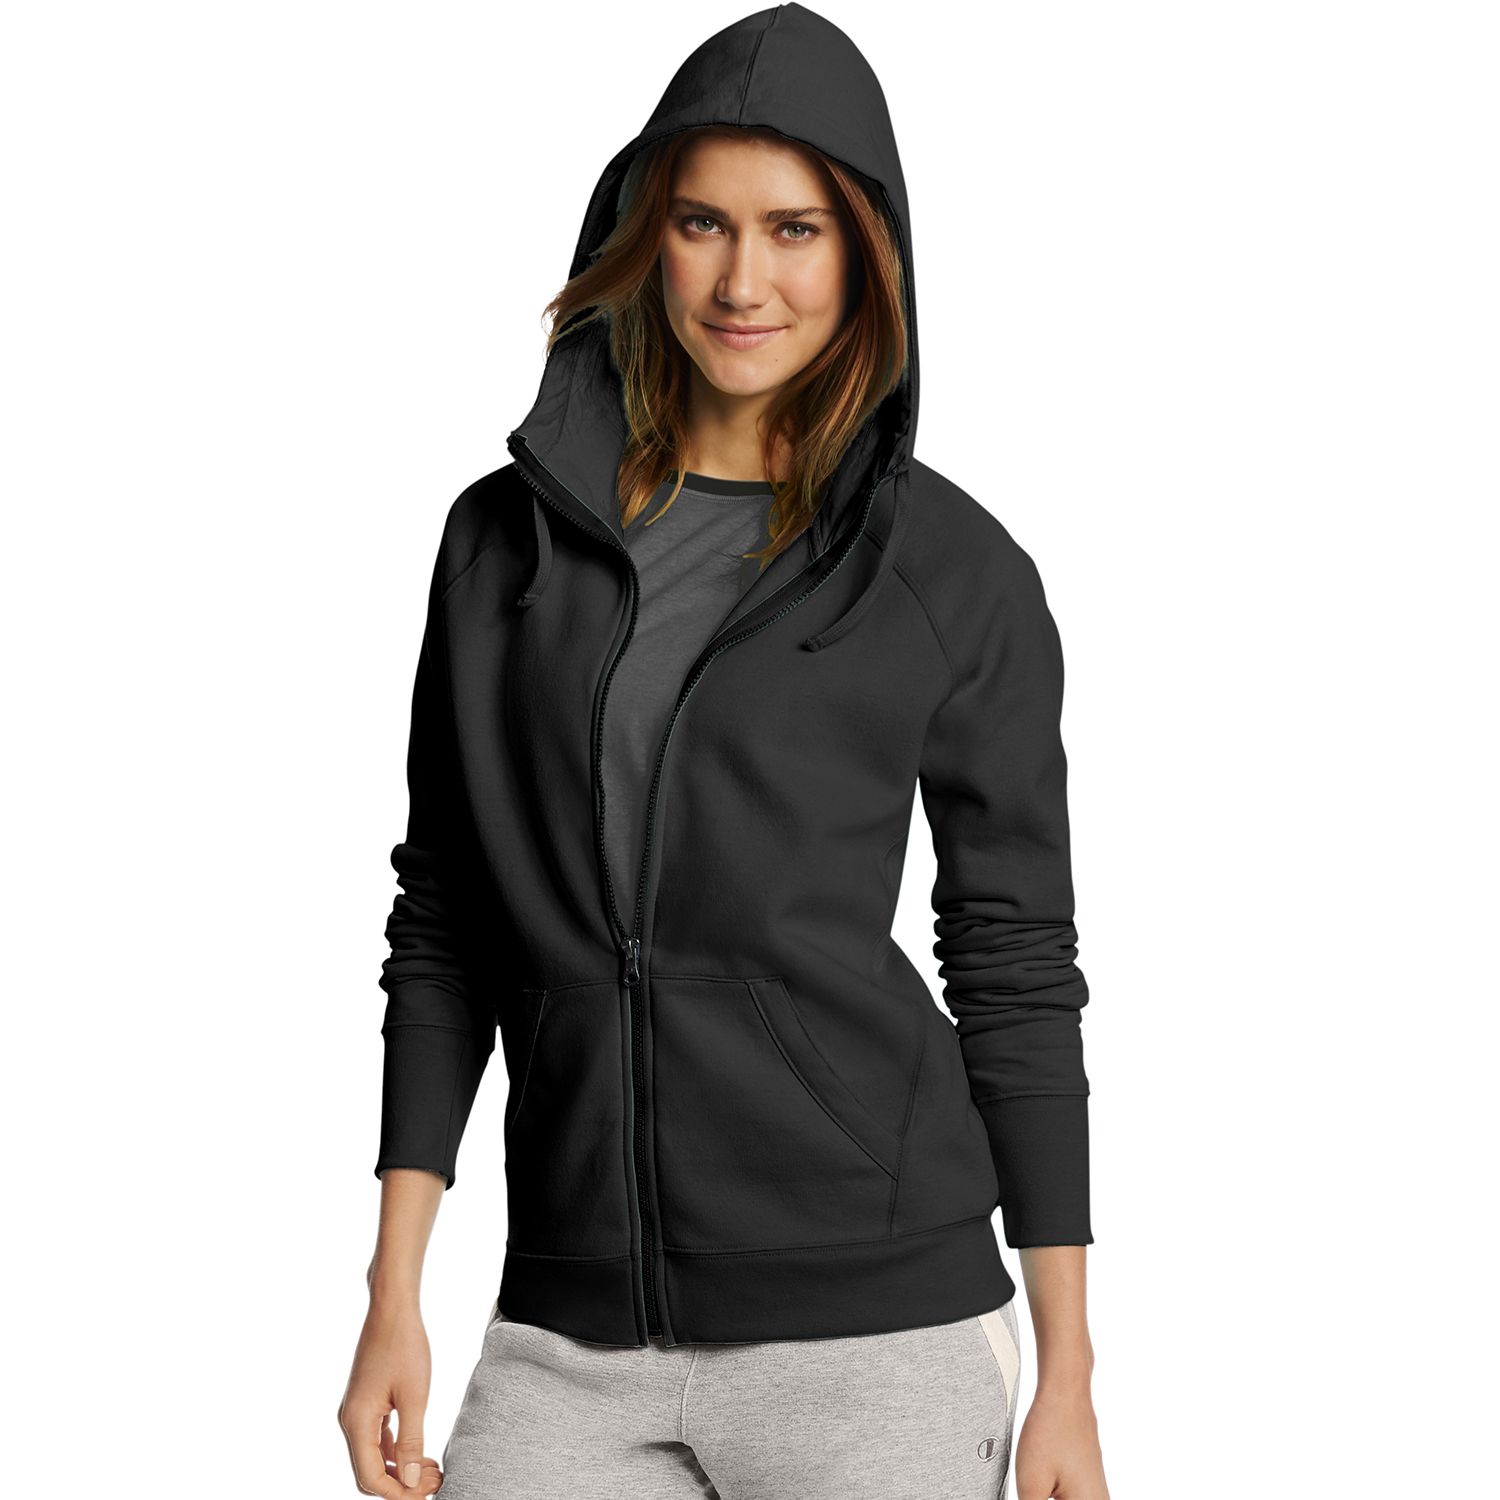 women's champion black zip up hoodie